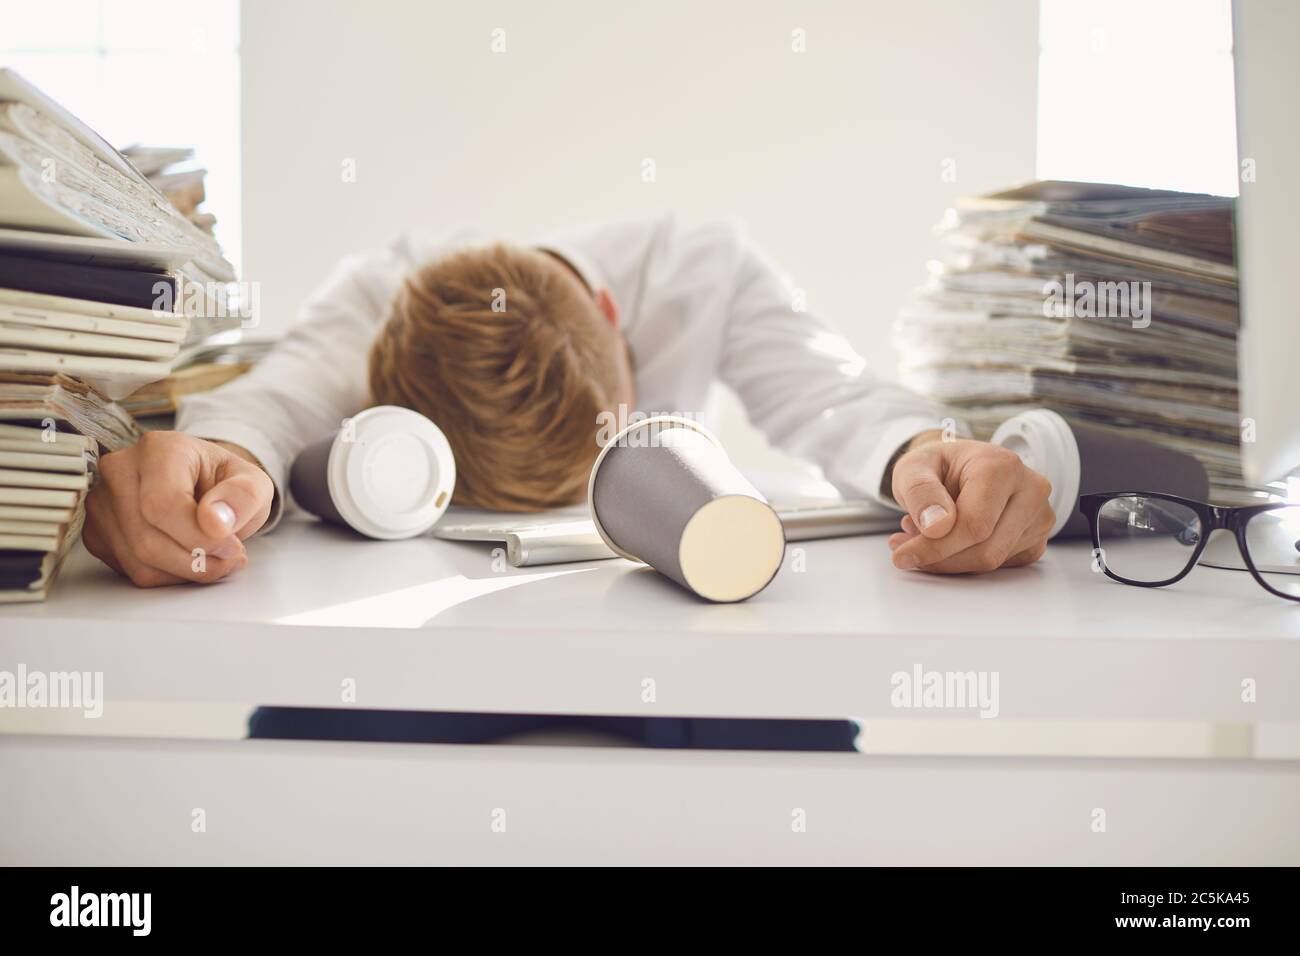 Müde beschäftigte Geschäftsleute, die mit einem Computer an einem Tisch schlafen. Stockfoto